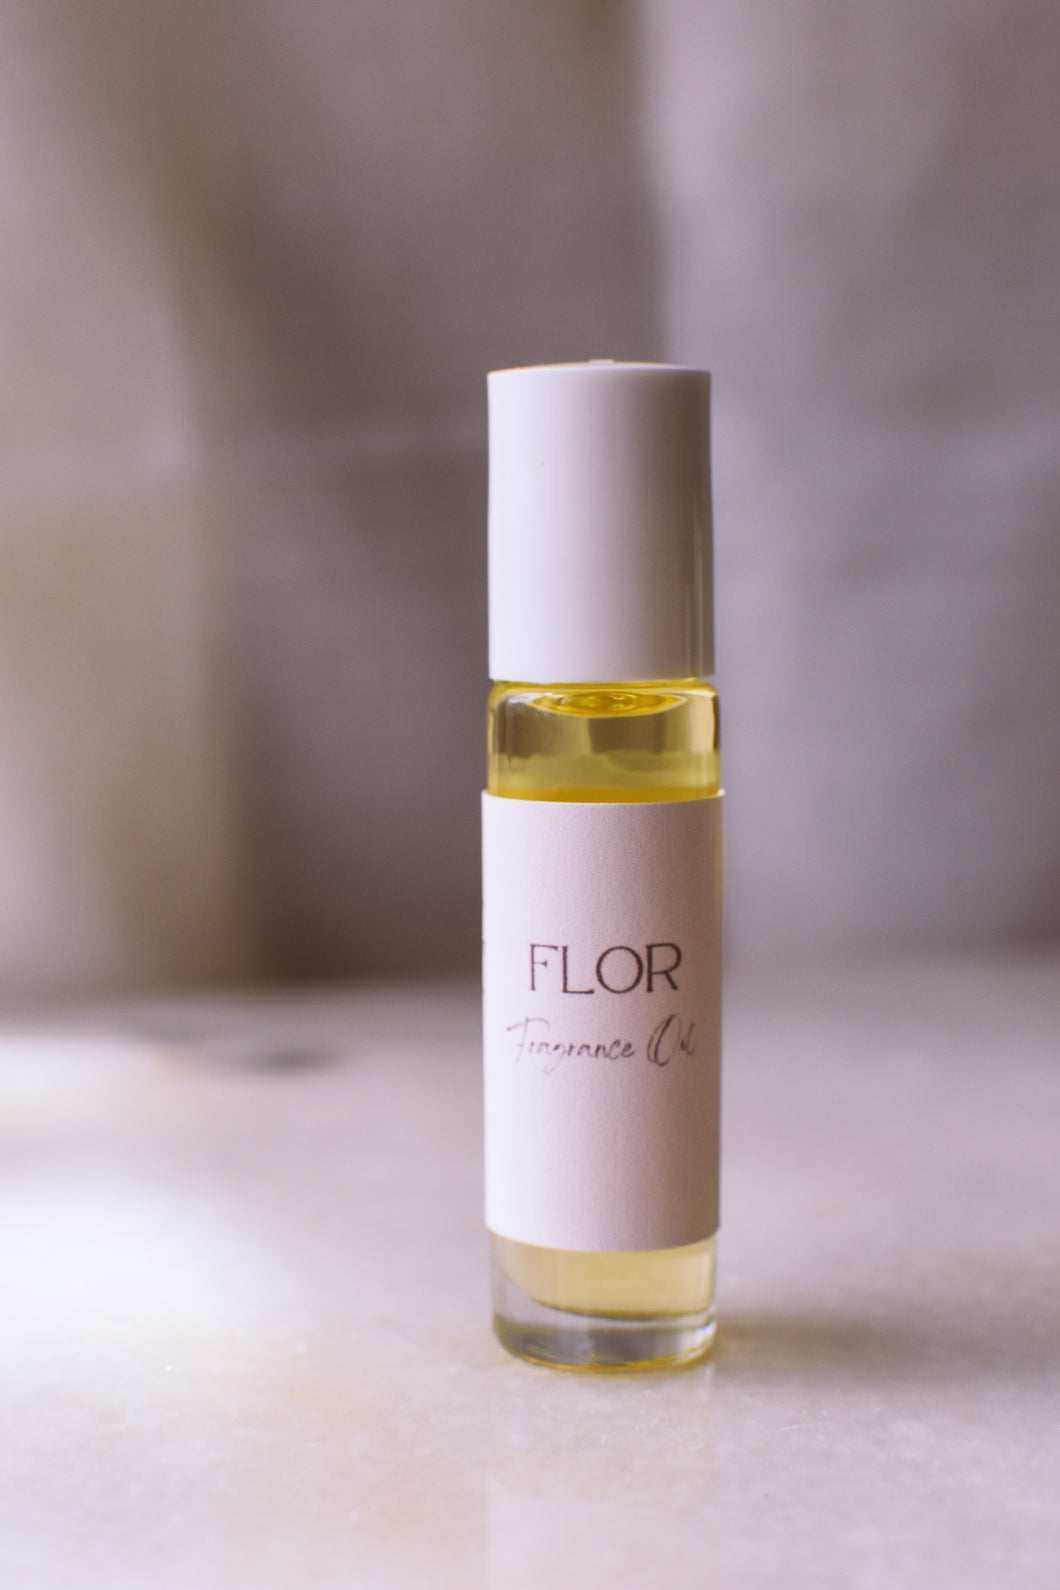 FLOR Fragrance Oil